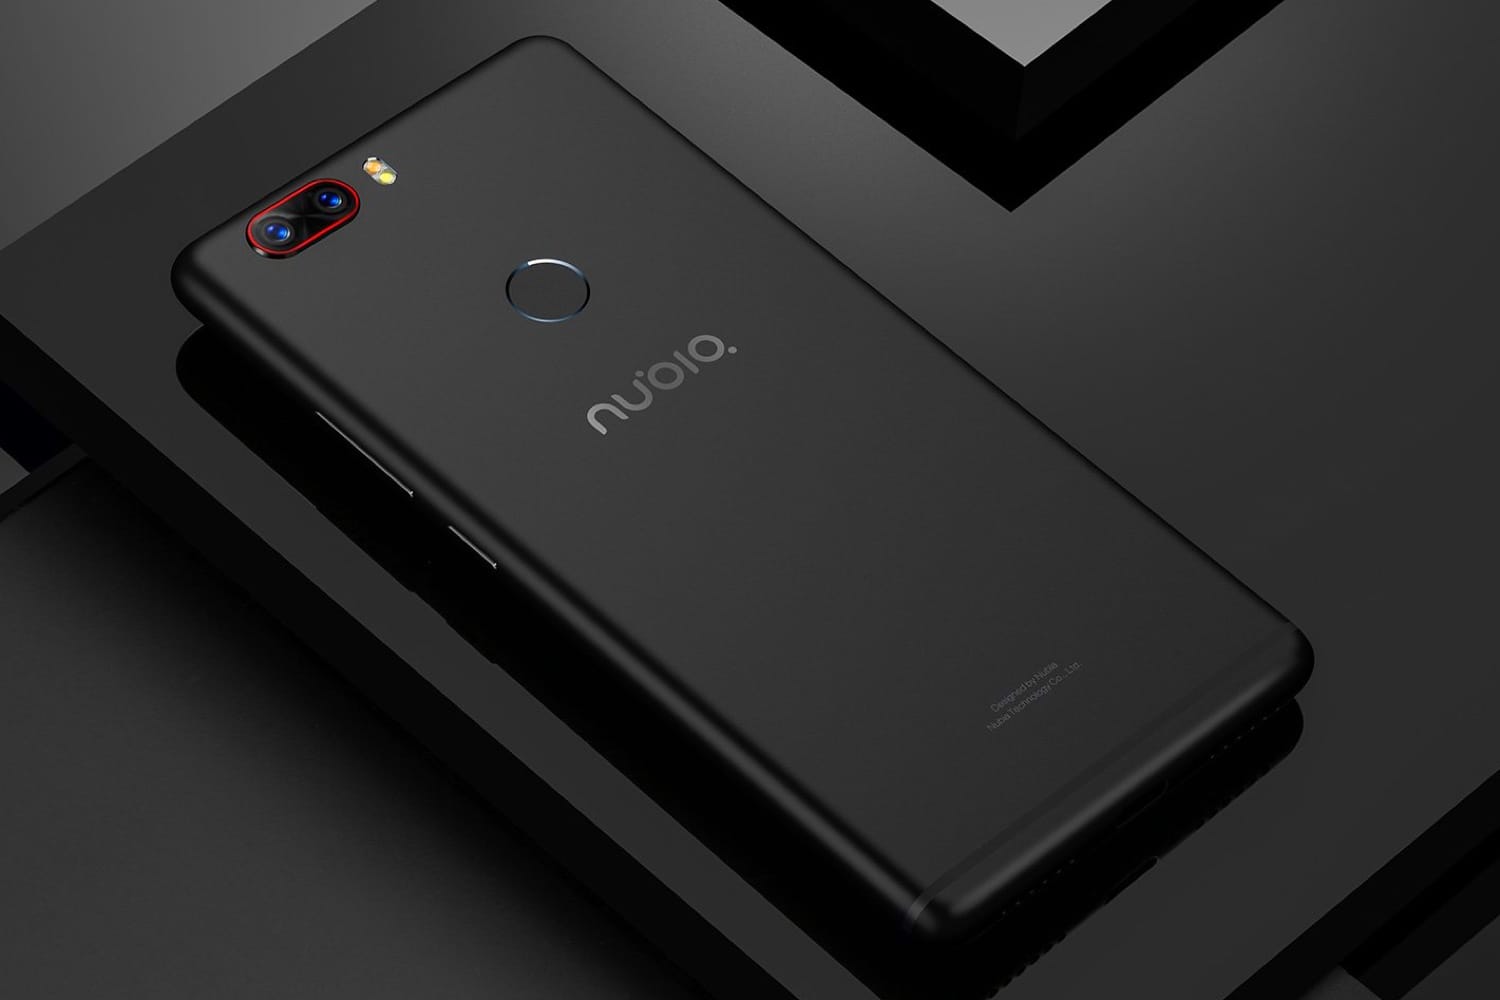 Безрамочный Nubia Z19 на Android Oreo - самый мощный смартфон в мире впервые на изображениях